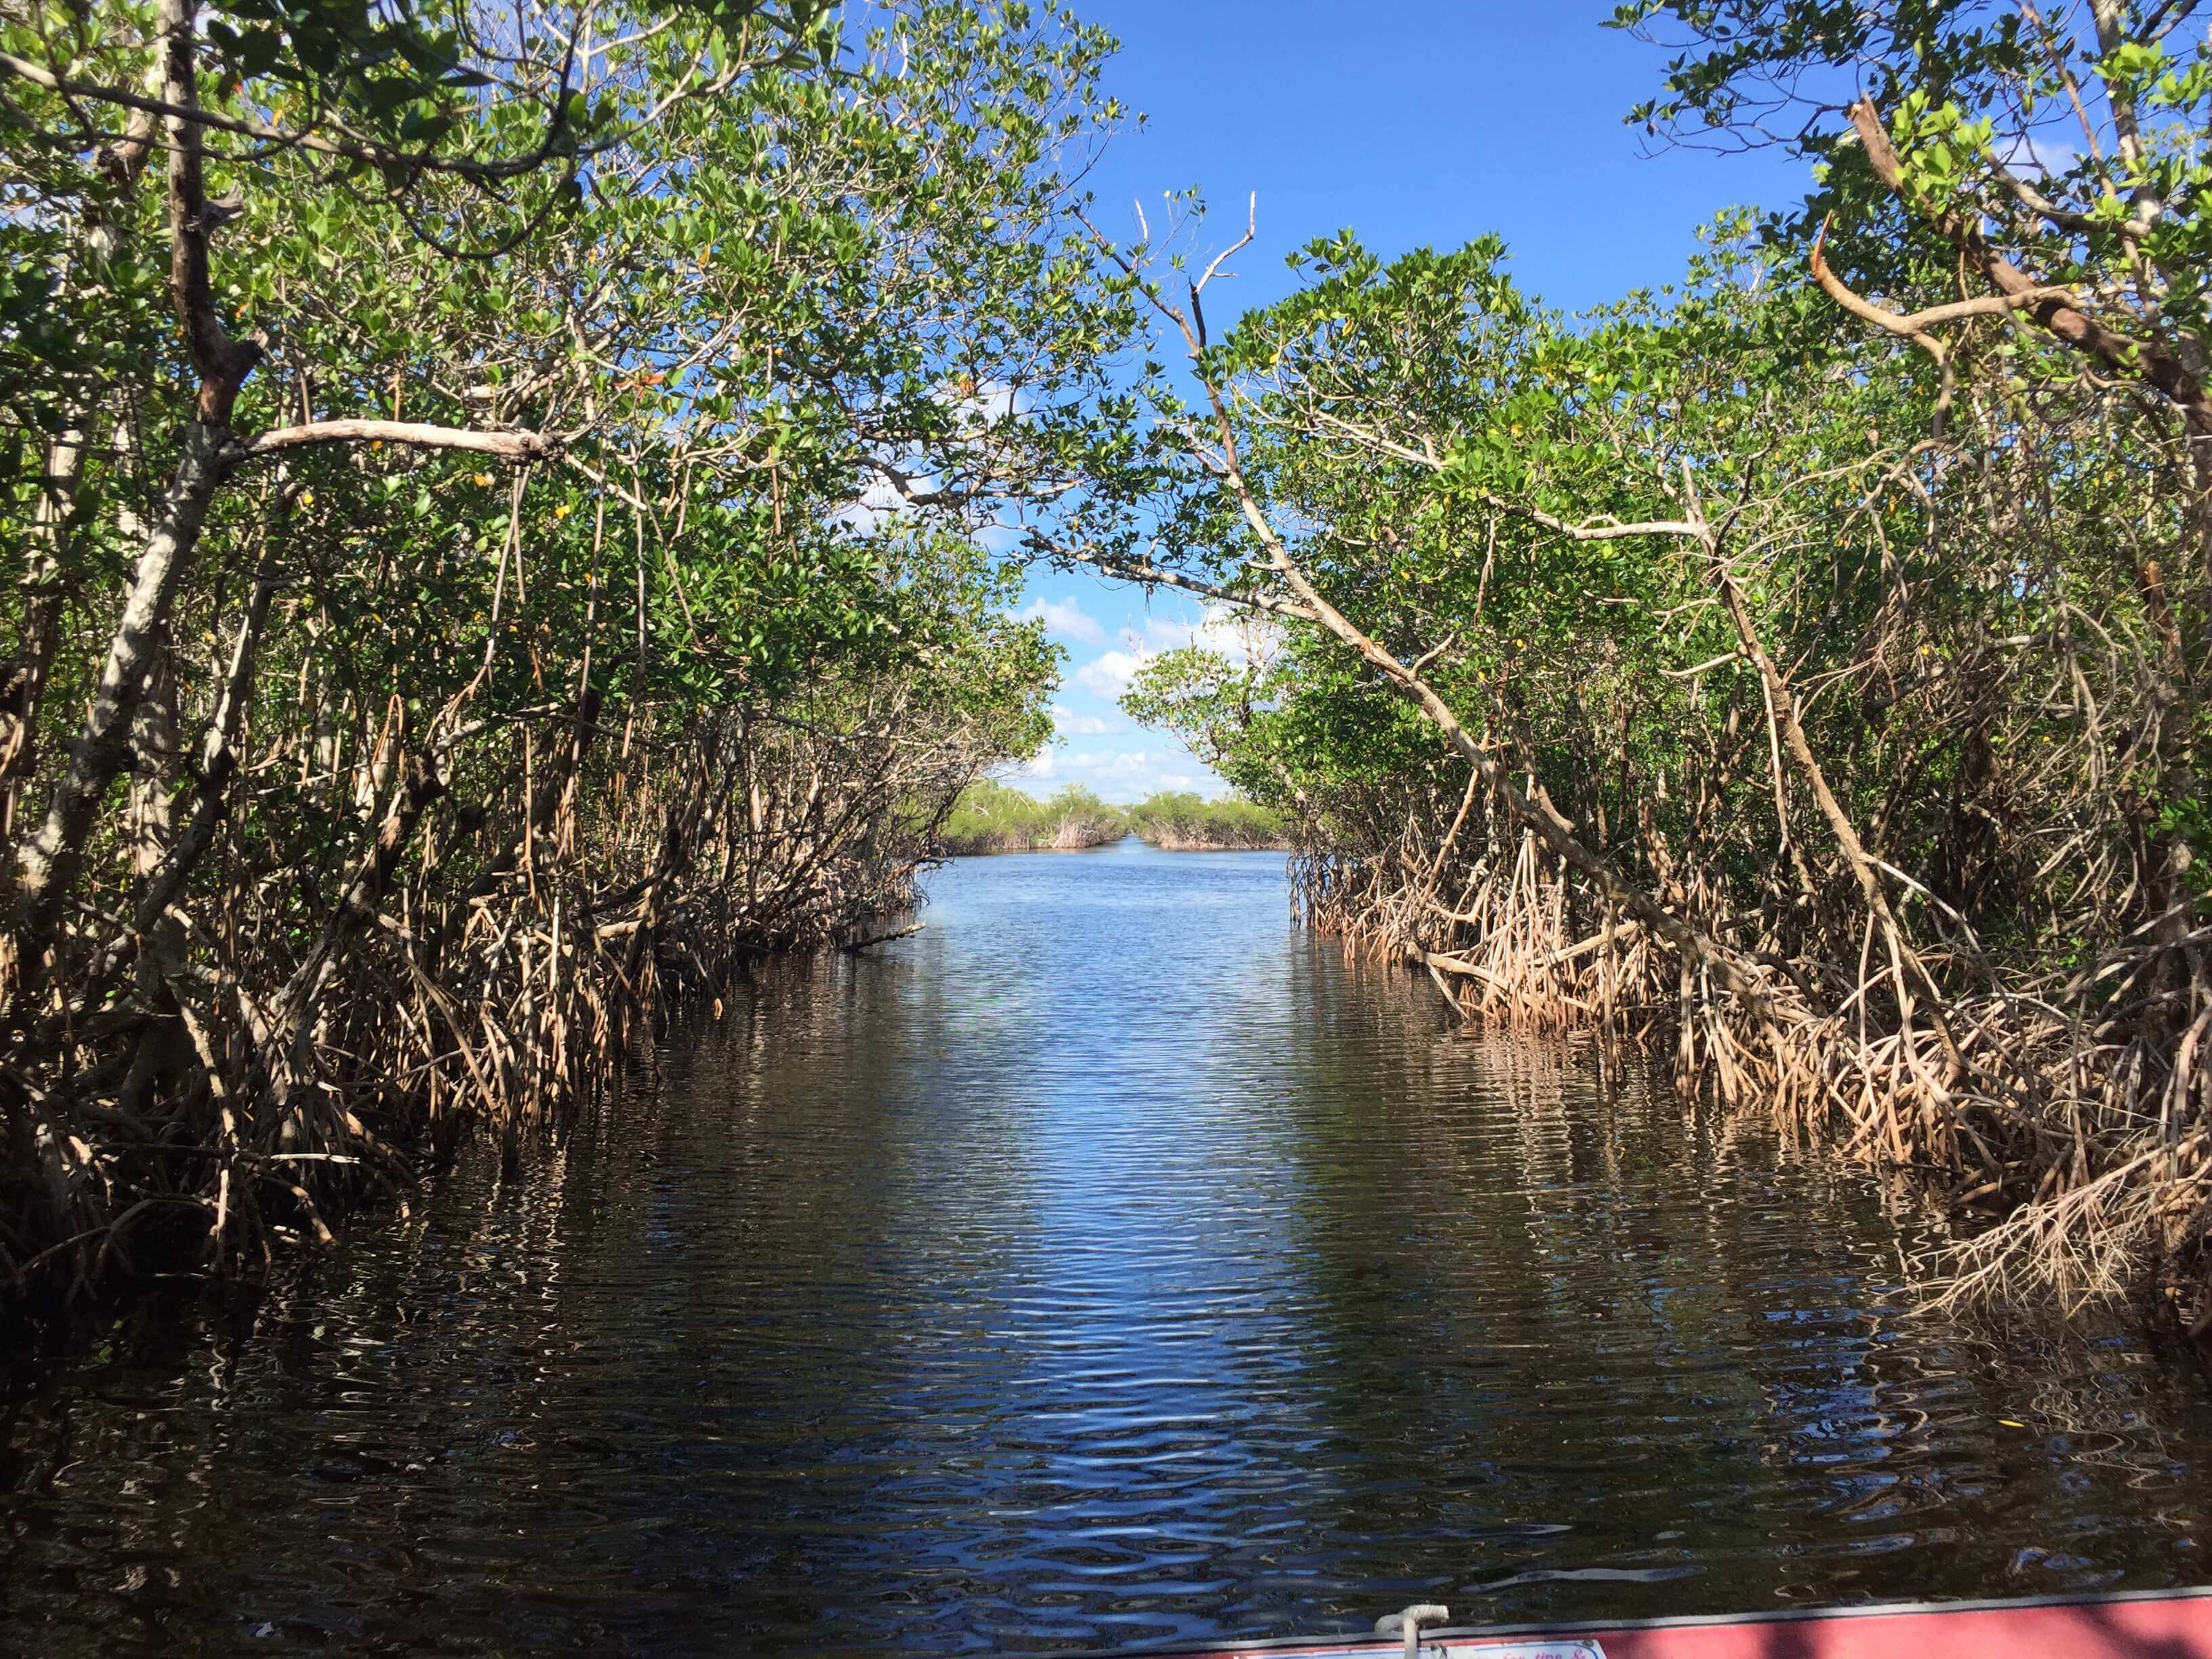 Touristisches Sumpfboot durch die Everglades National Park, USA